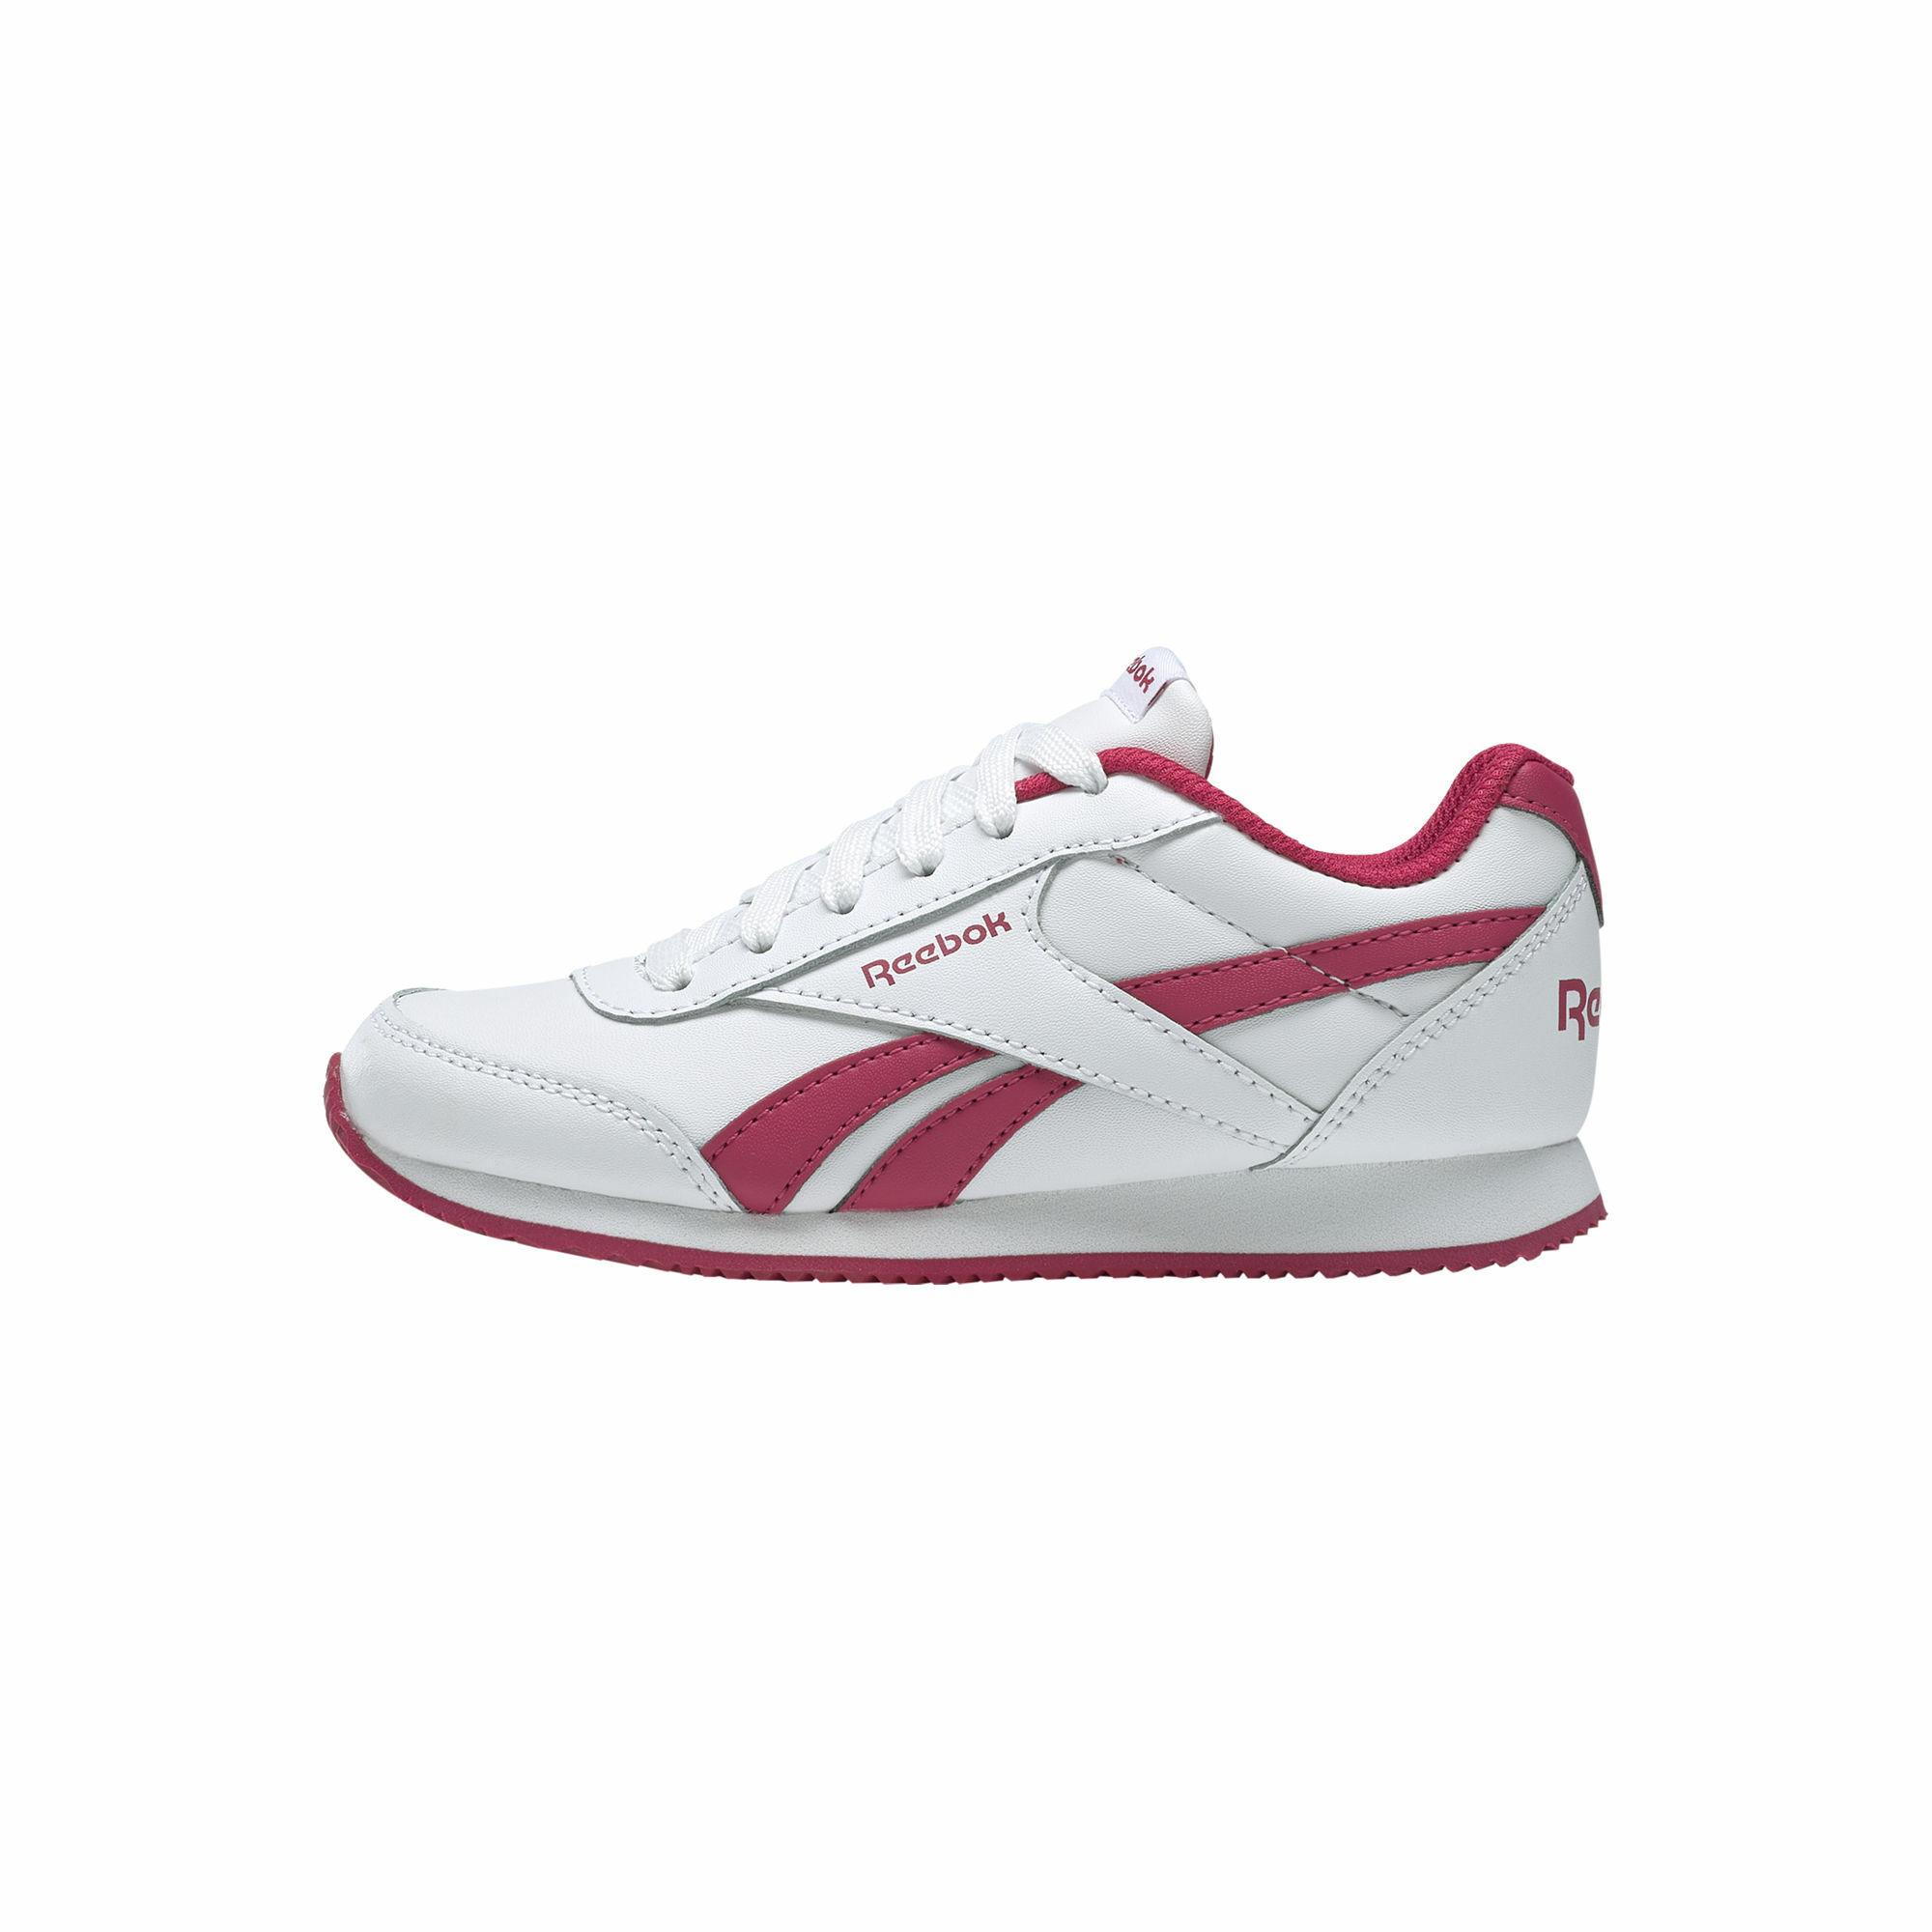 Reebok Reebok Royal Classic Jogger 2.0 Sneaker Kinder White / Rugged Rose  im Online Shop von SportScheck kaufen